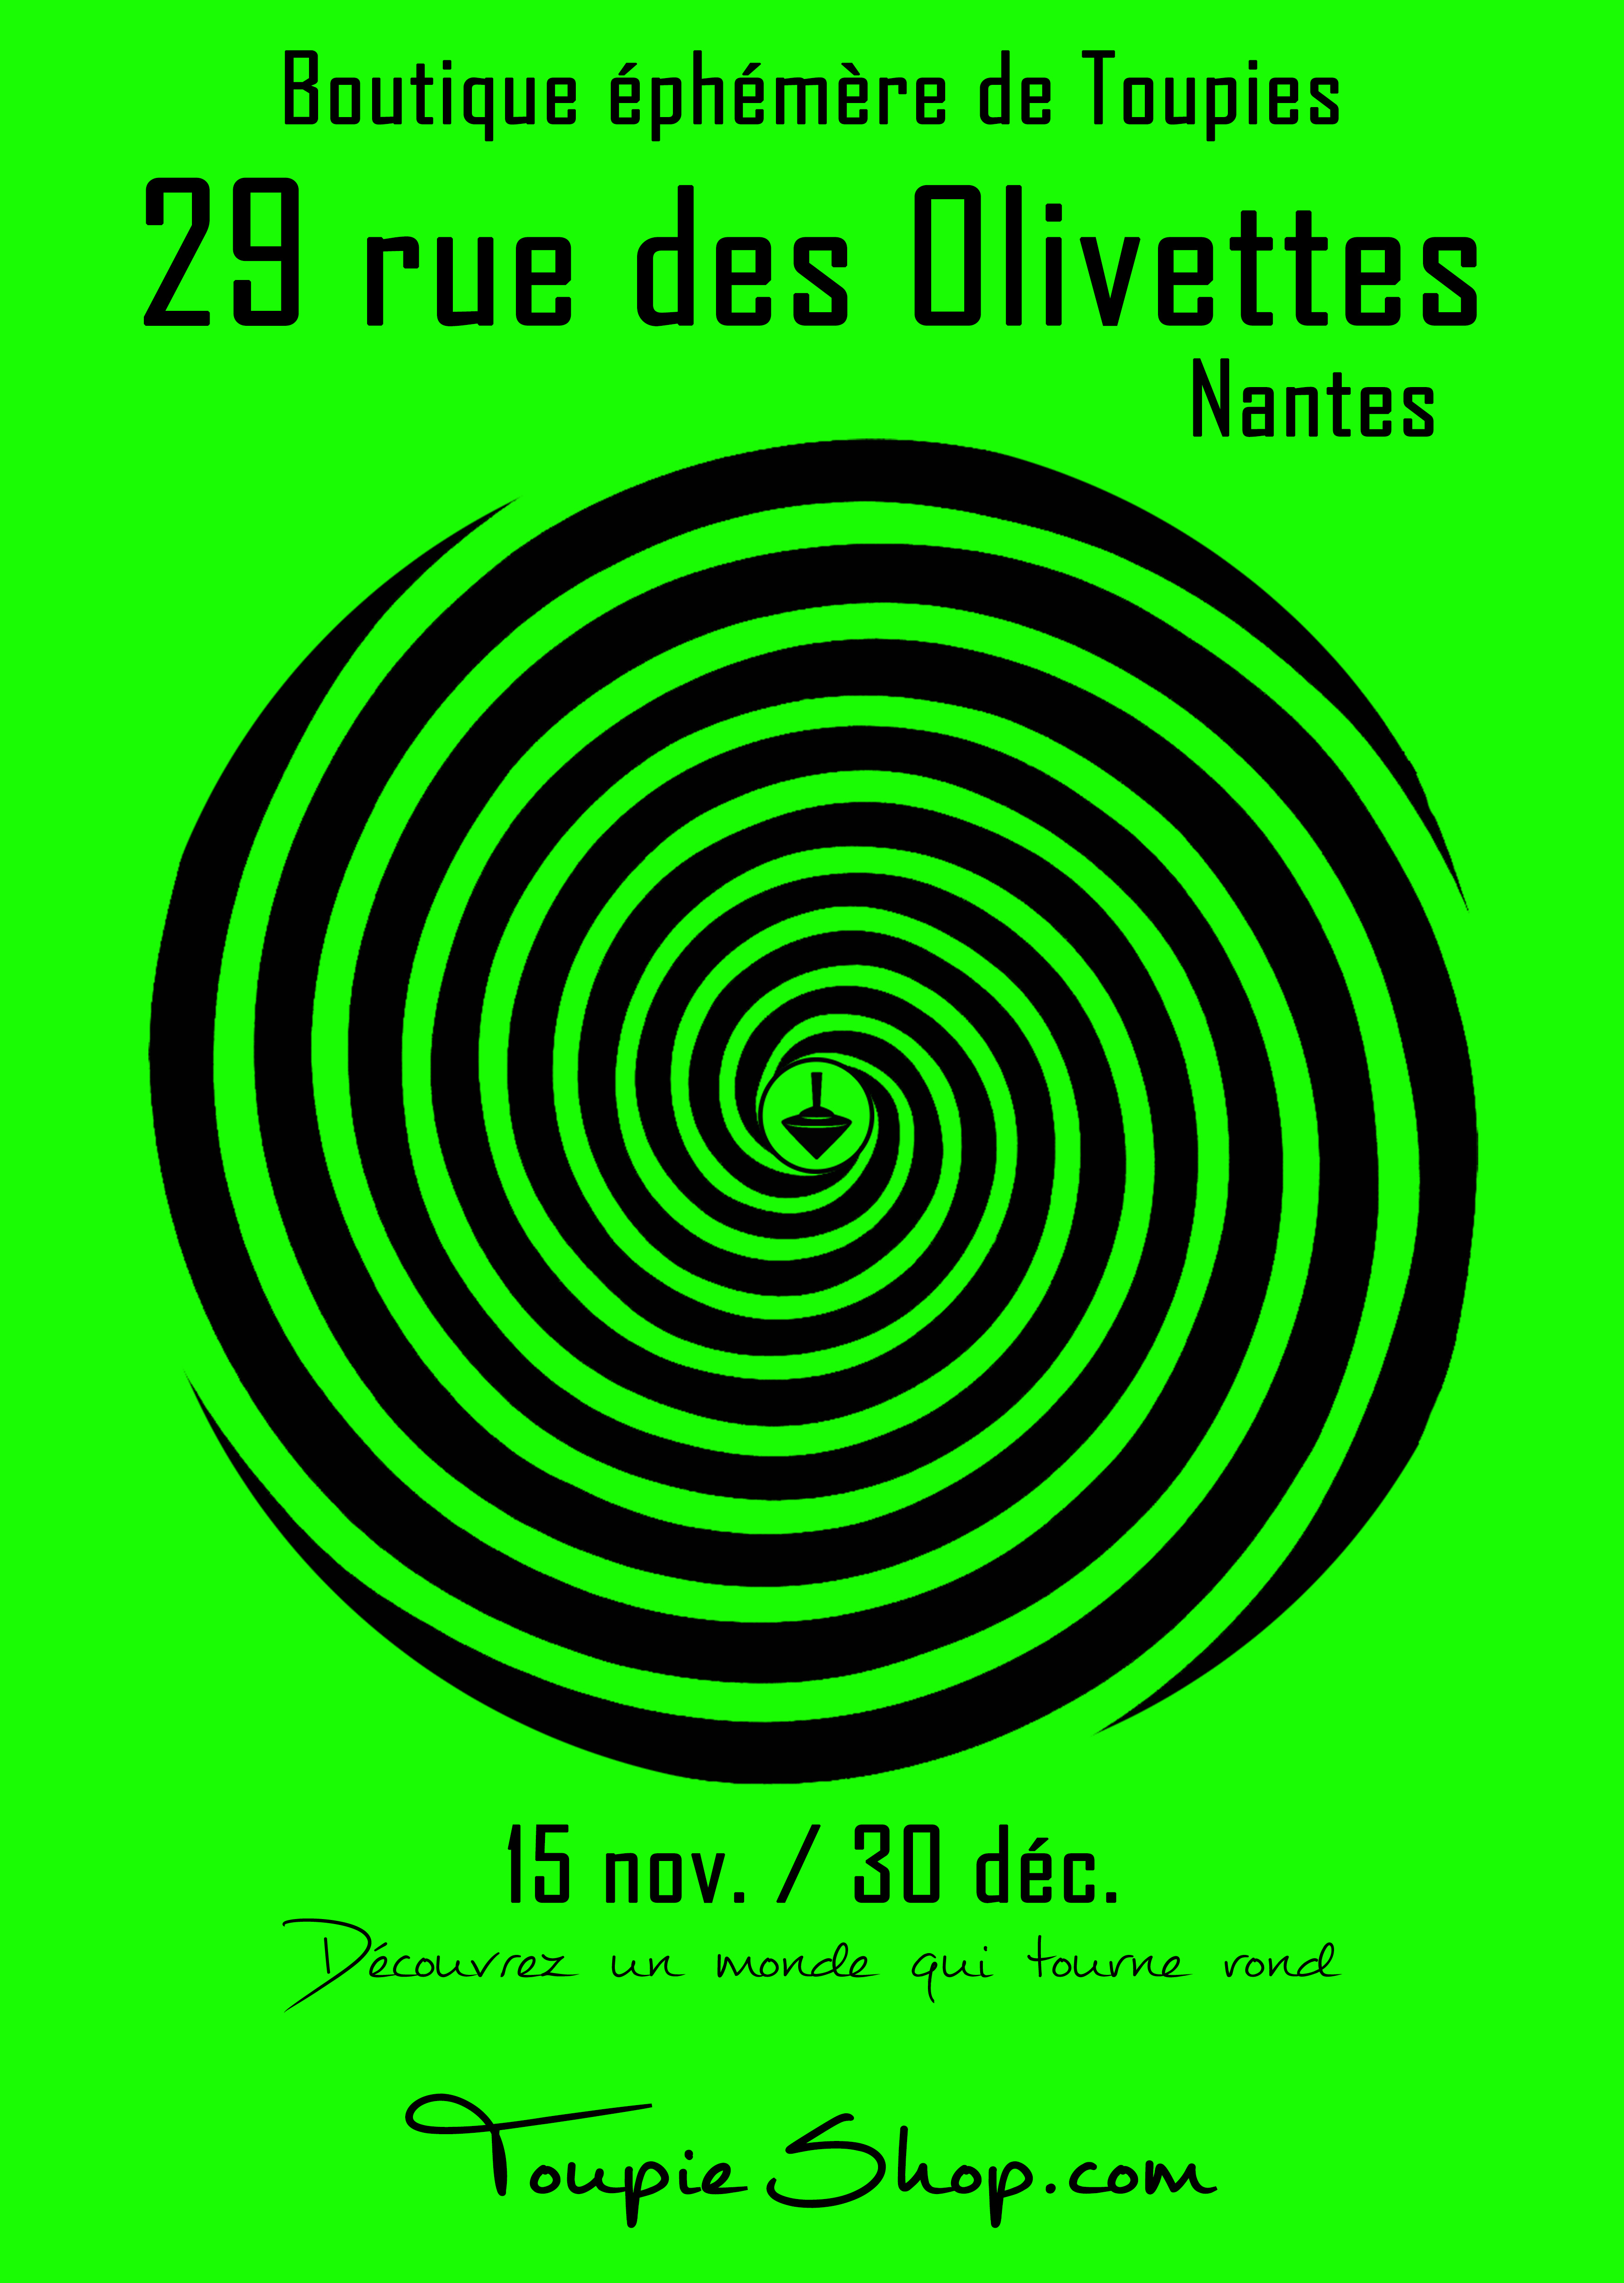 Boutique éphémère de toupies du 15 nov. au 30 déc. pour Noël 2019 au 29 rue des Olivettes à Nantes